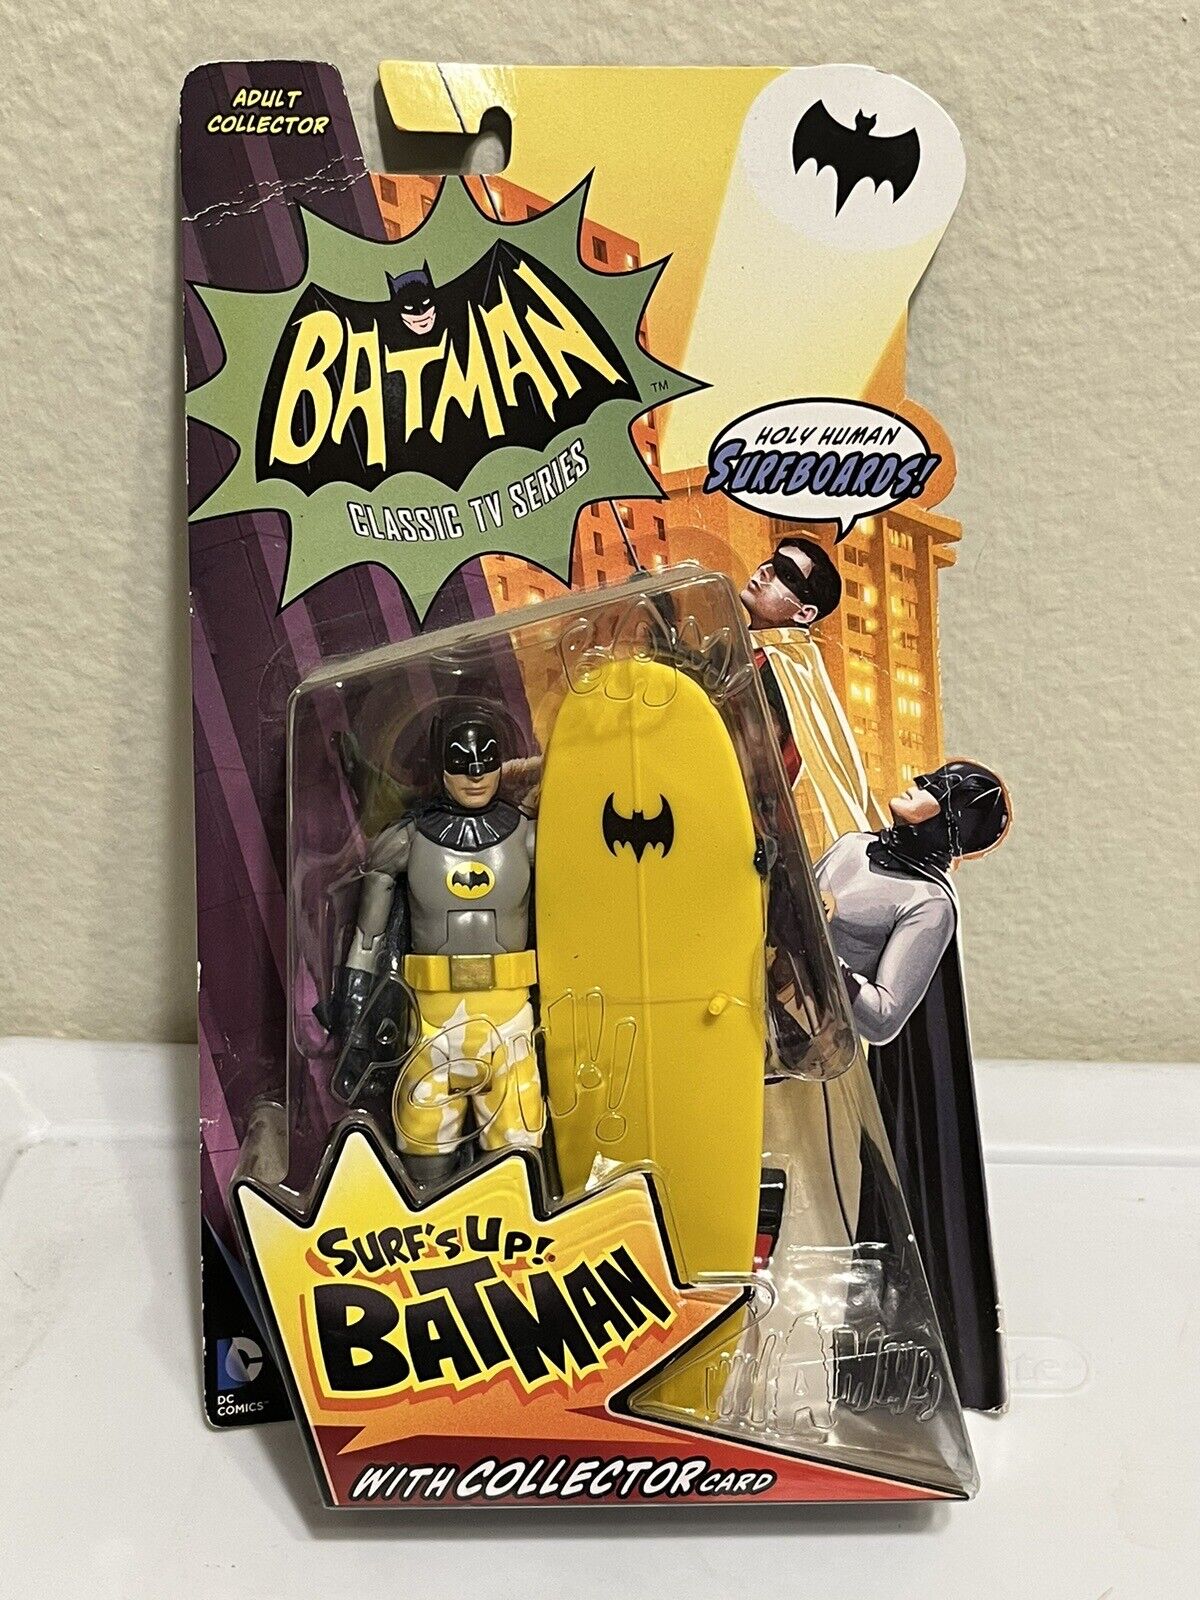 Batman Classic 1966 TV Series SURFS UP BATMAN Action Figure Mattel 2013